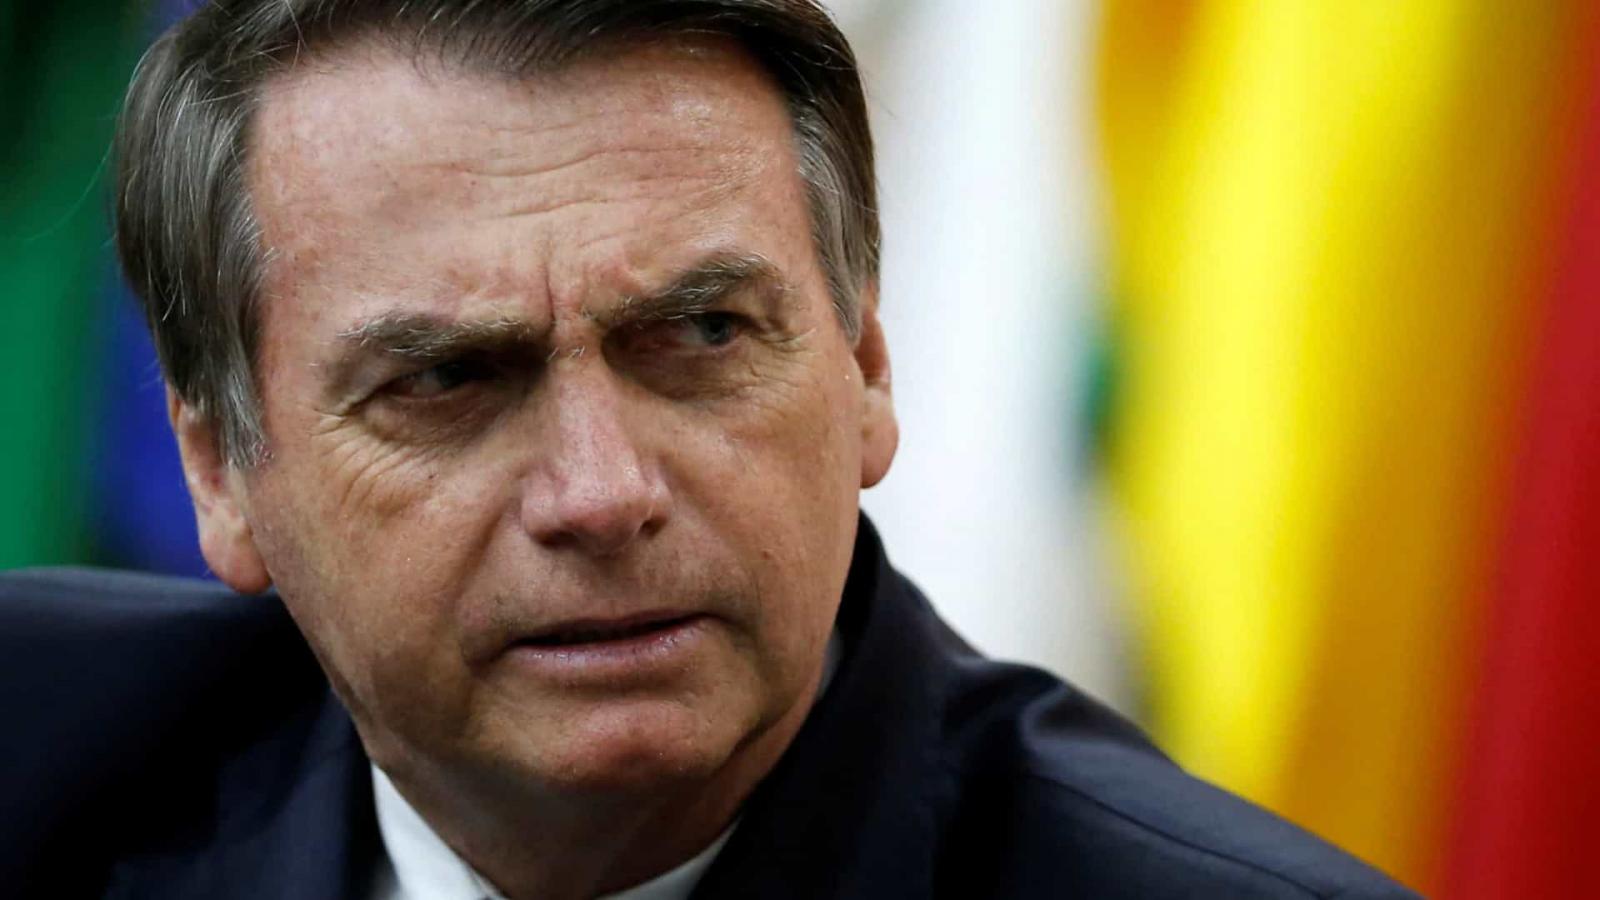 Sem citar nomes, Bolsonaro insinua que uma autoridade sofre chantagem